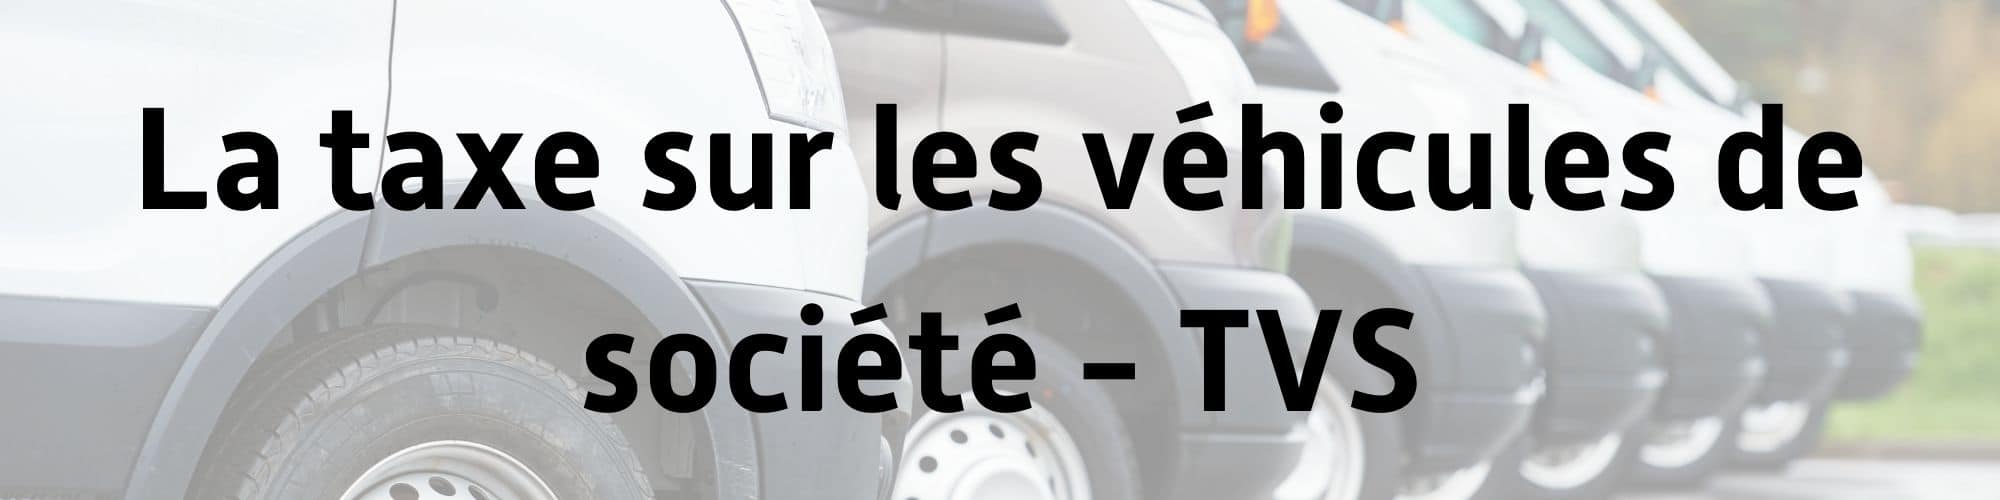 taxe_vehicule_societe